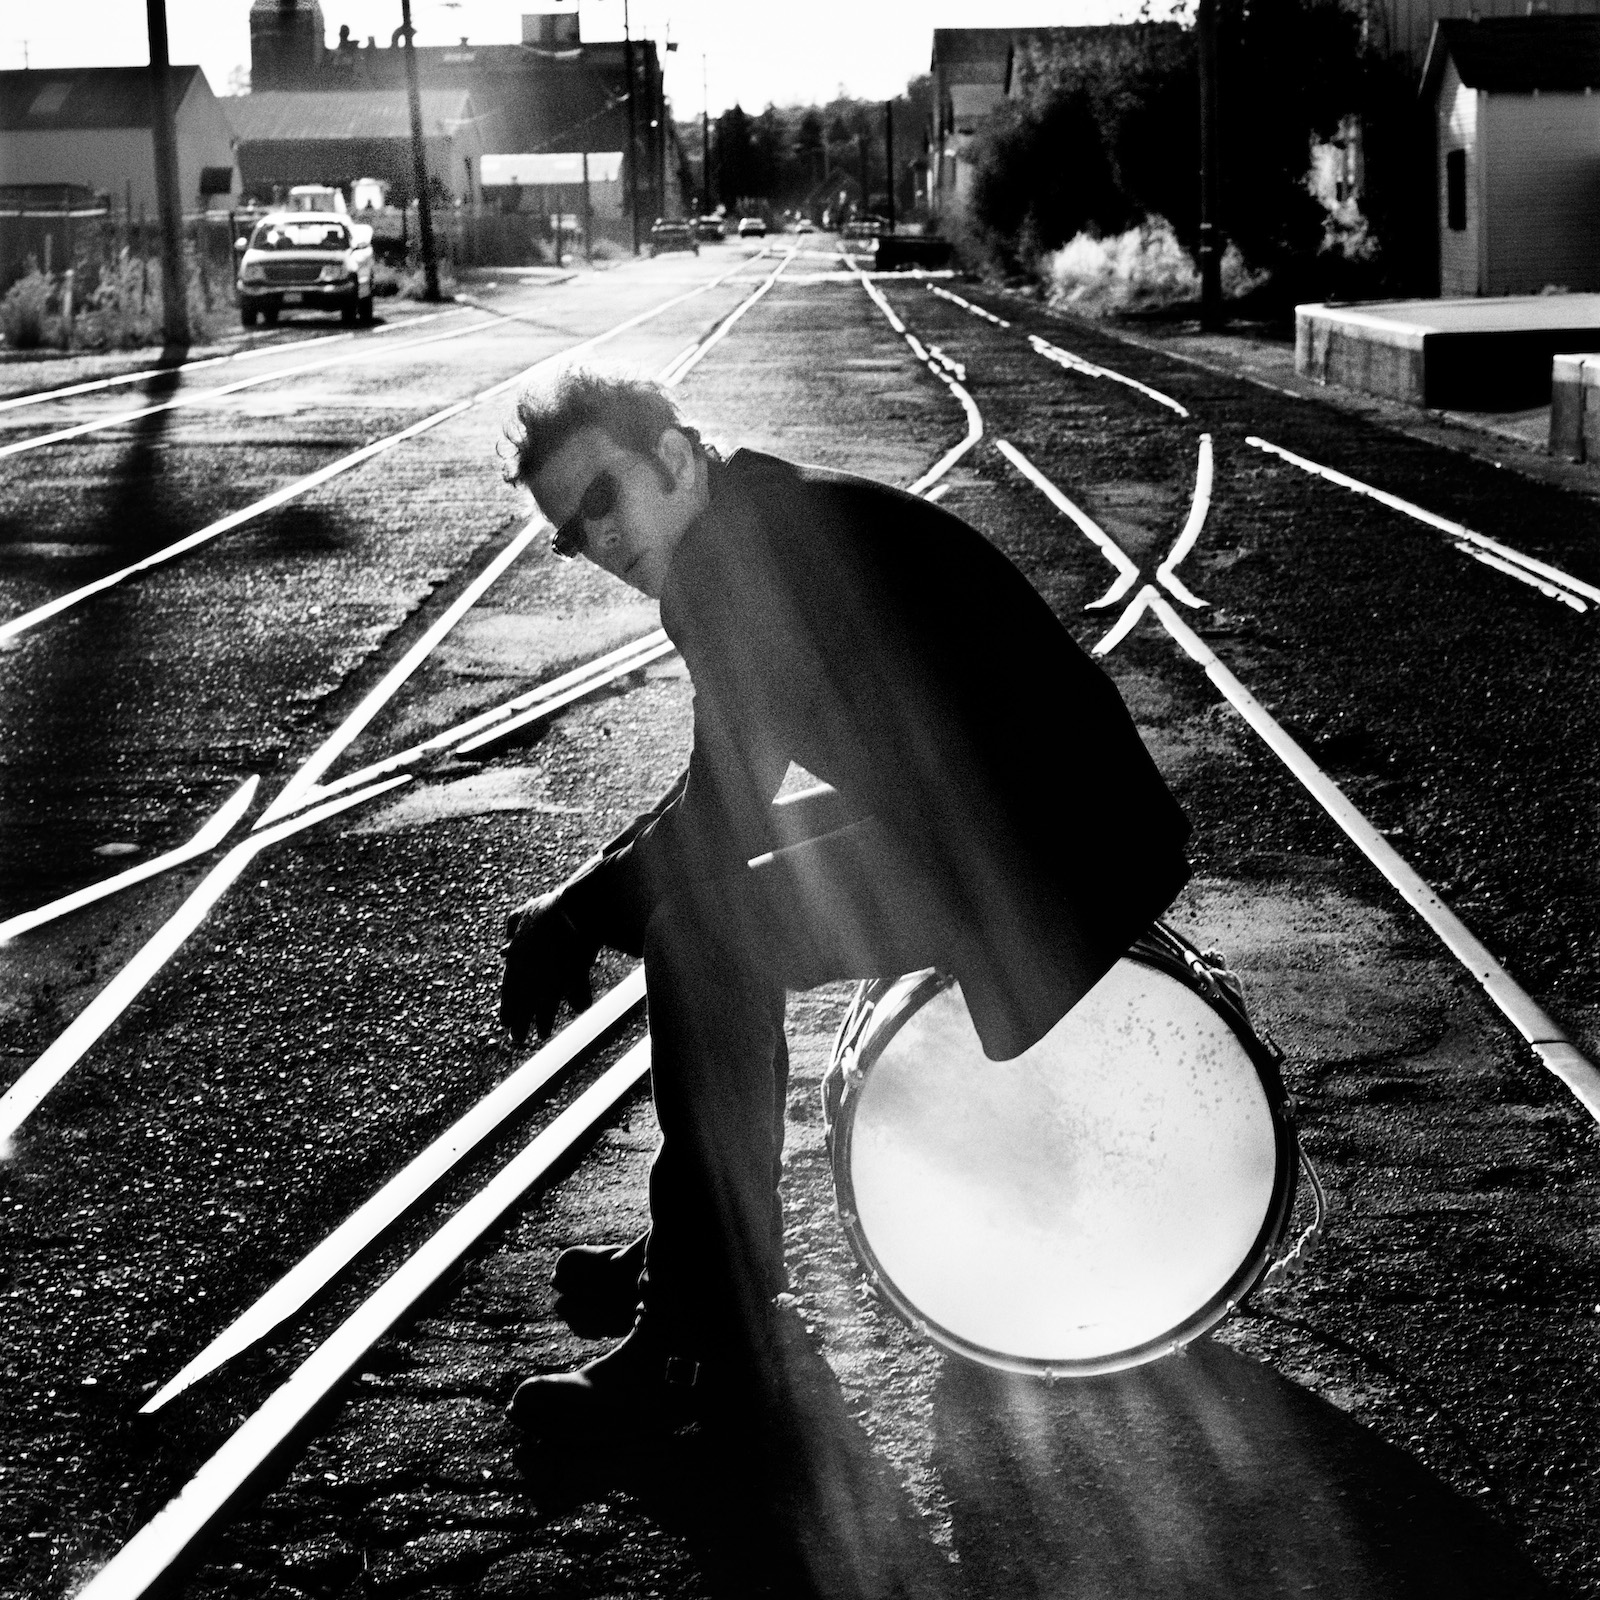 Tom Waits, Santa Rosa 2004 © Anton Corbijn